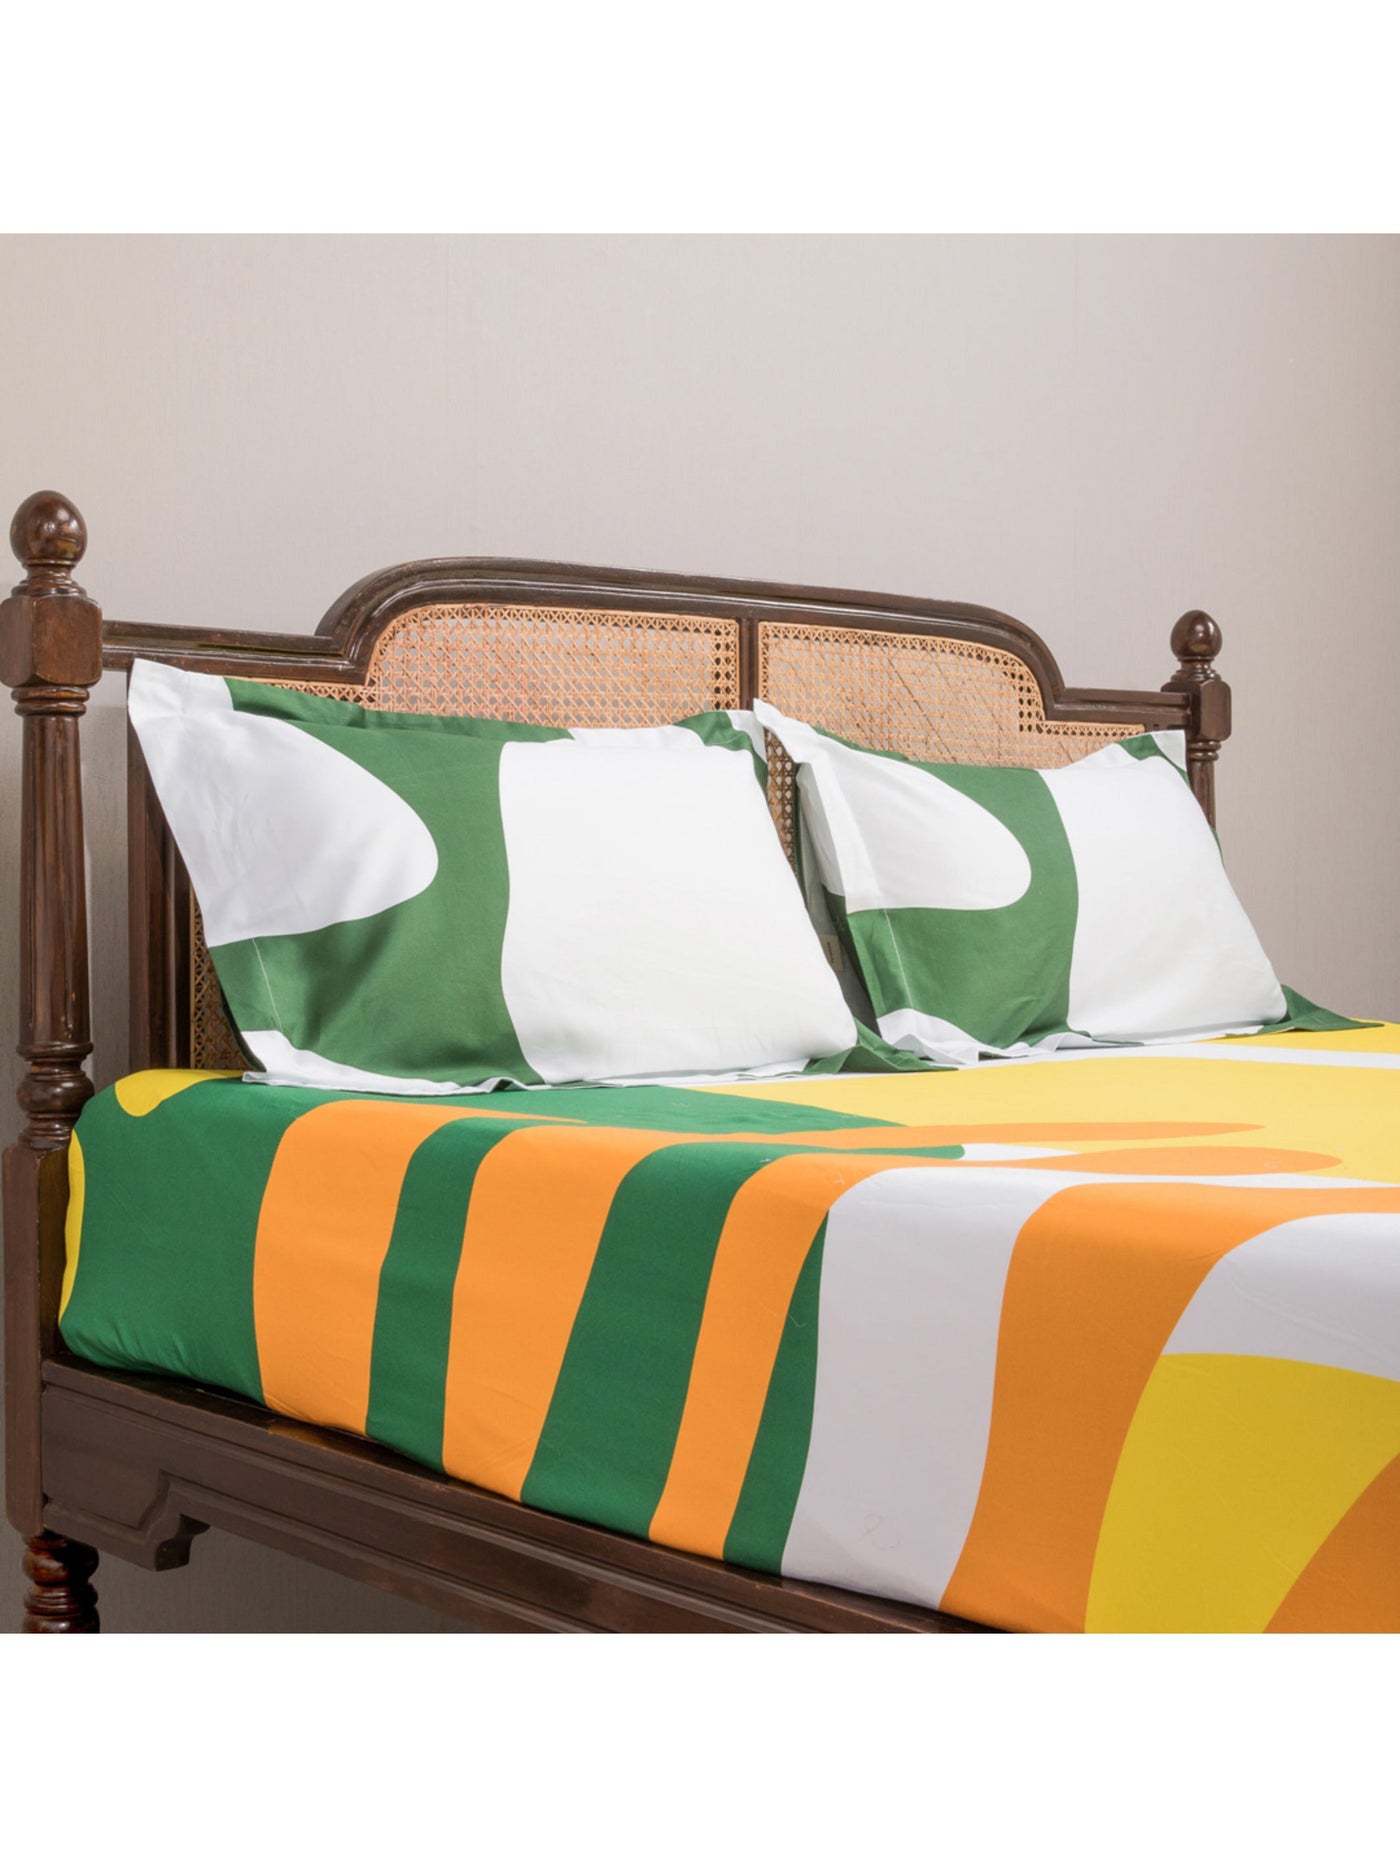 Bedsheet - The Matisse Meets Memphis In Yellow & Green Copy